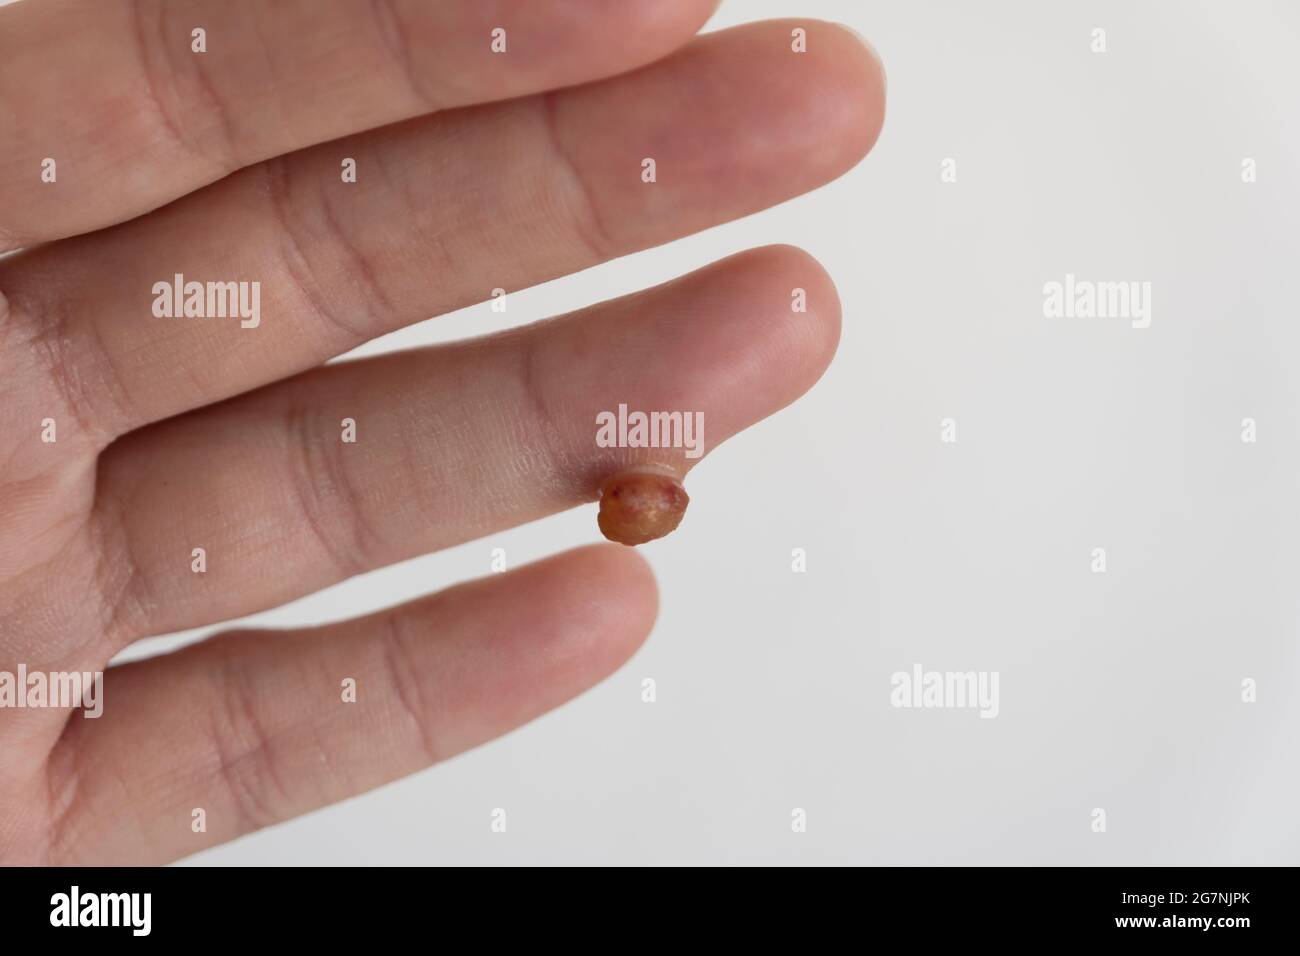 Protruding soft tissue tumor in finger on white background Stock Photo